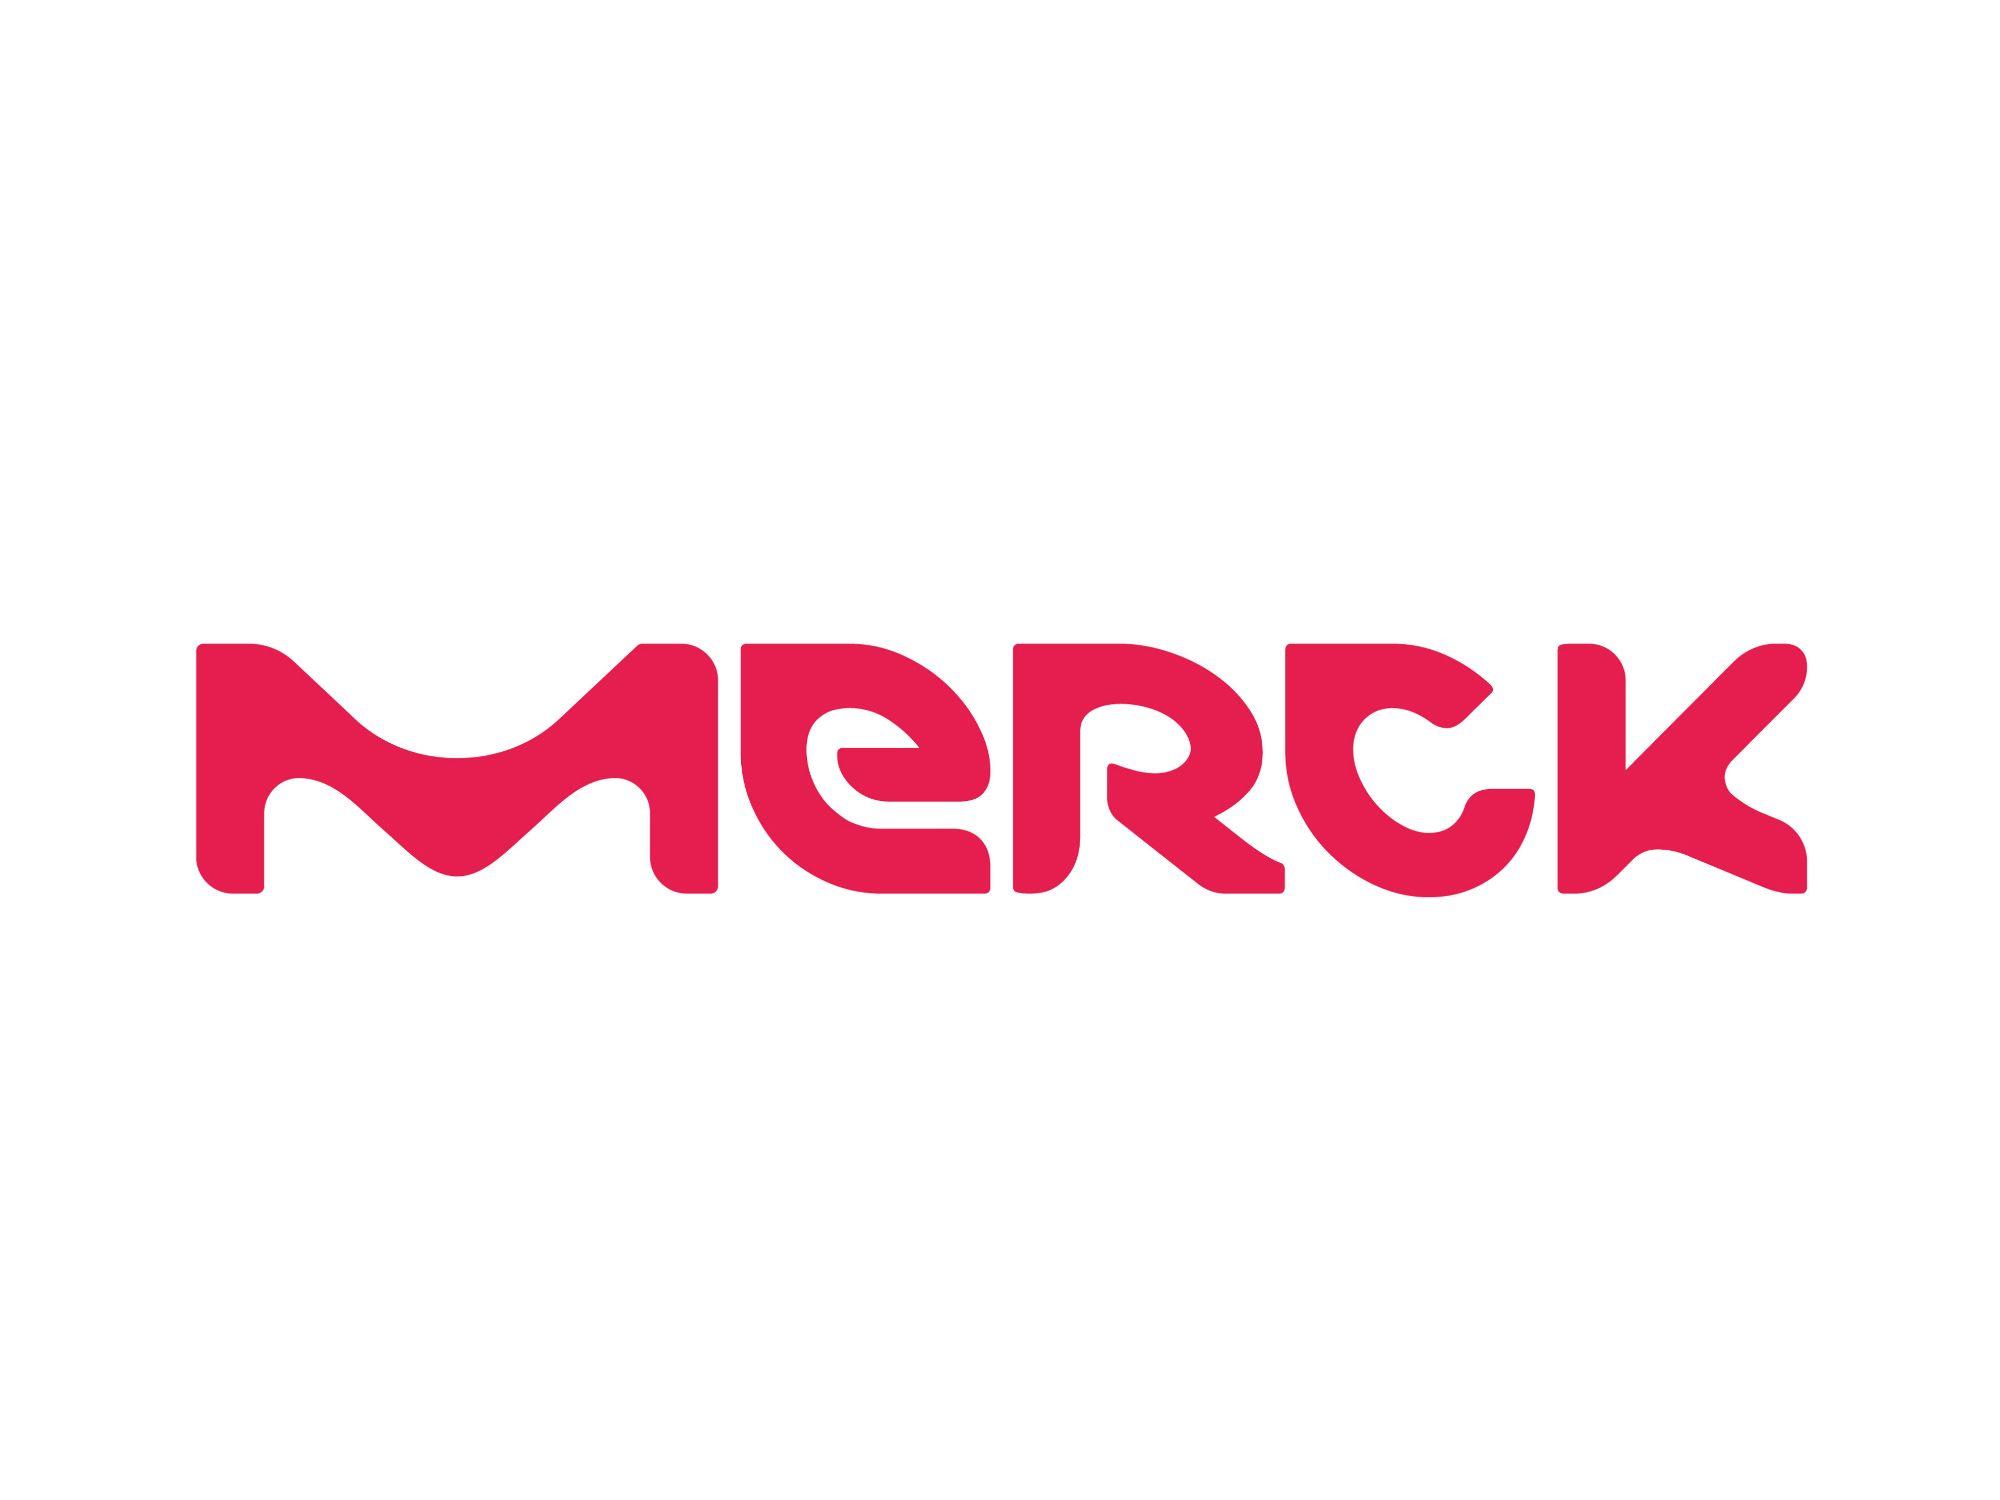 RedR Logo - The red Merck logo